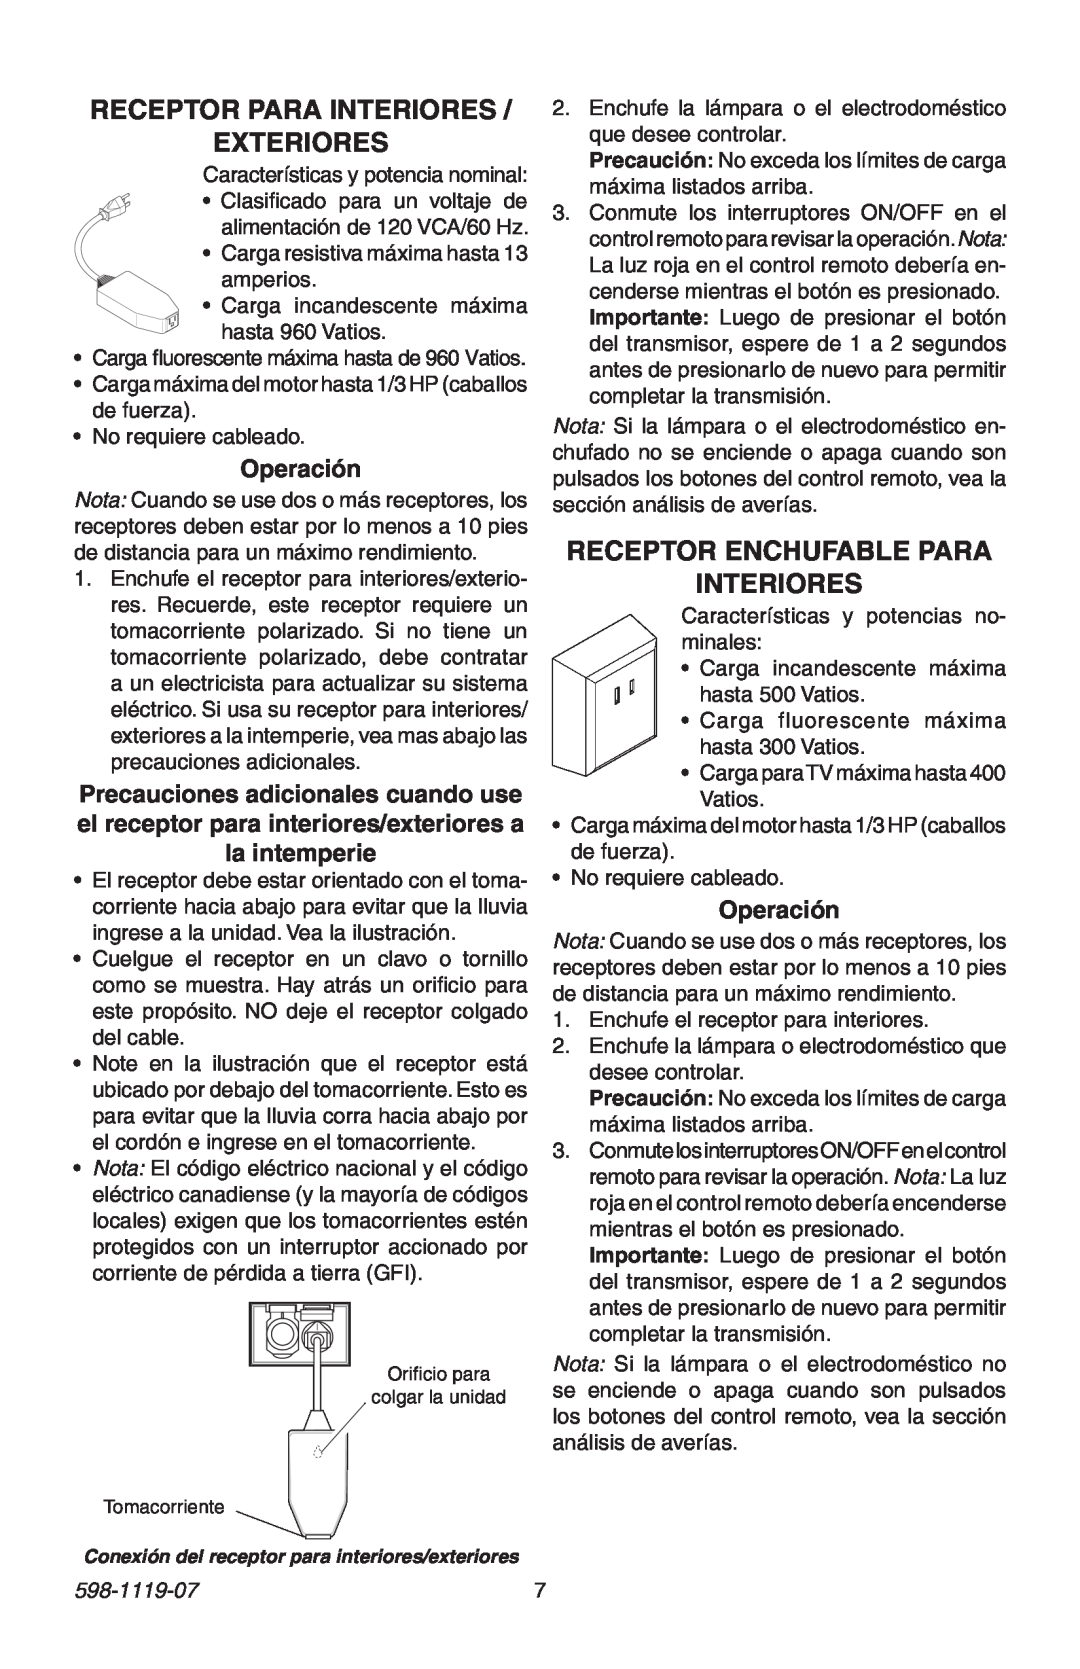 Heath Zenith 598-1119-07 manual Receptor Para Interiores Exteriores, Receptor Enchufable Para Interiores, Operación 